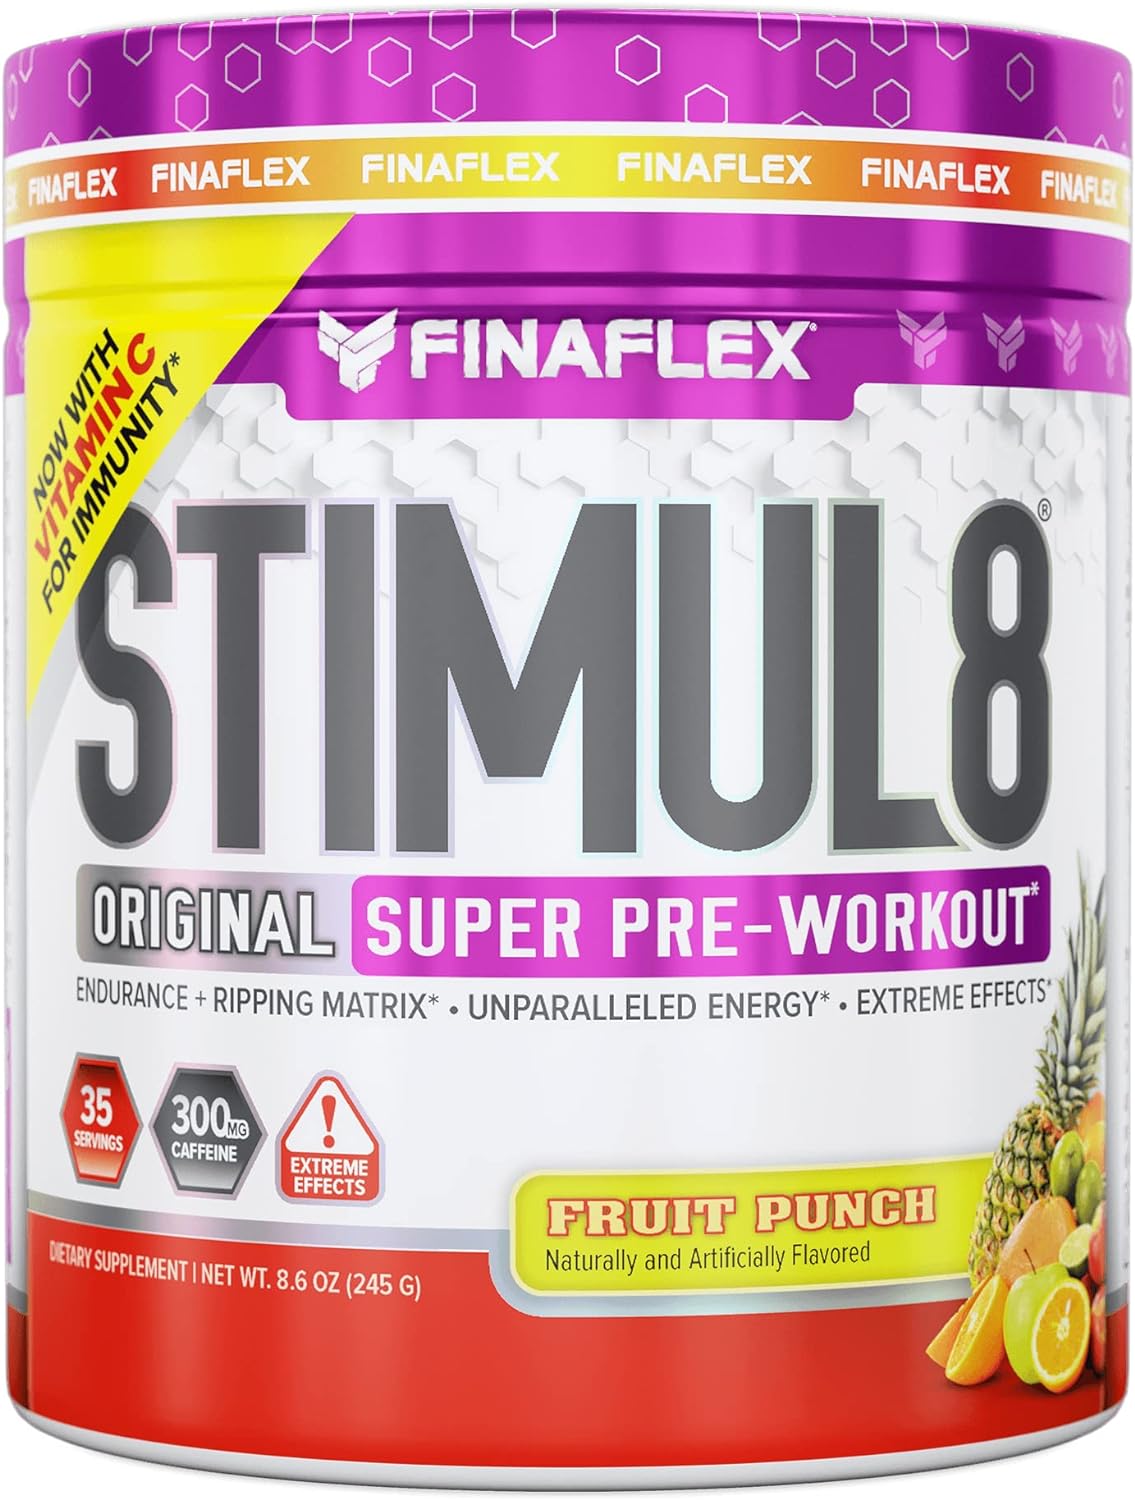 FINAFLEX STIMUL8 Original Super Pre-Workout, Fruit Punch - Energy, Str